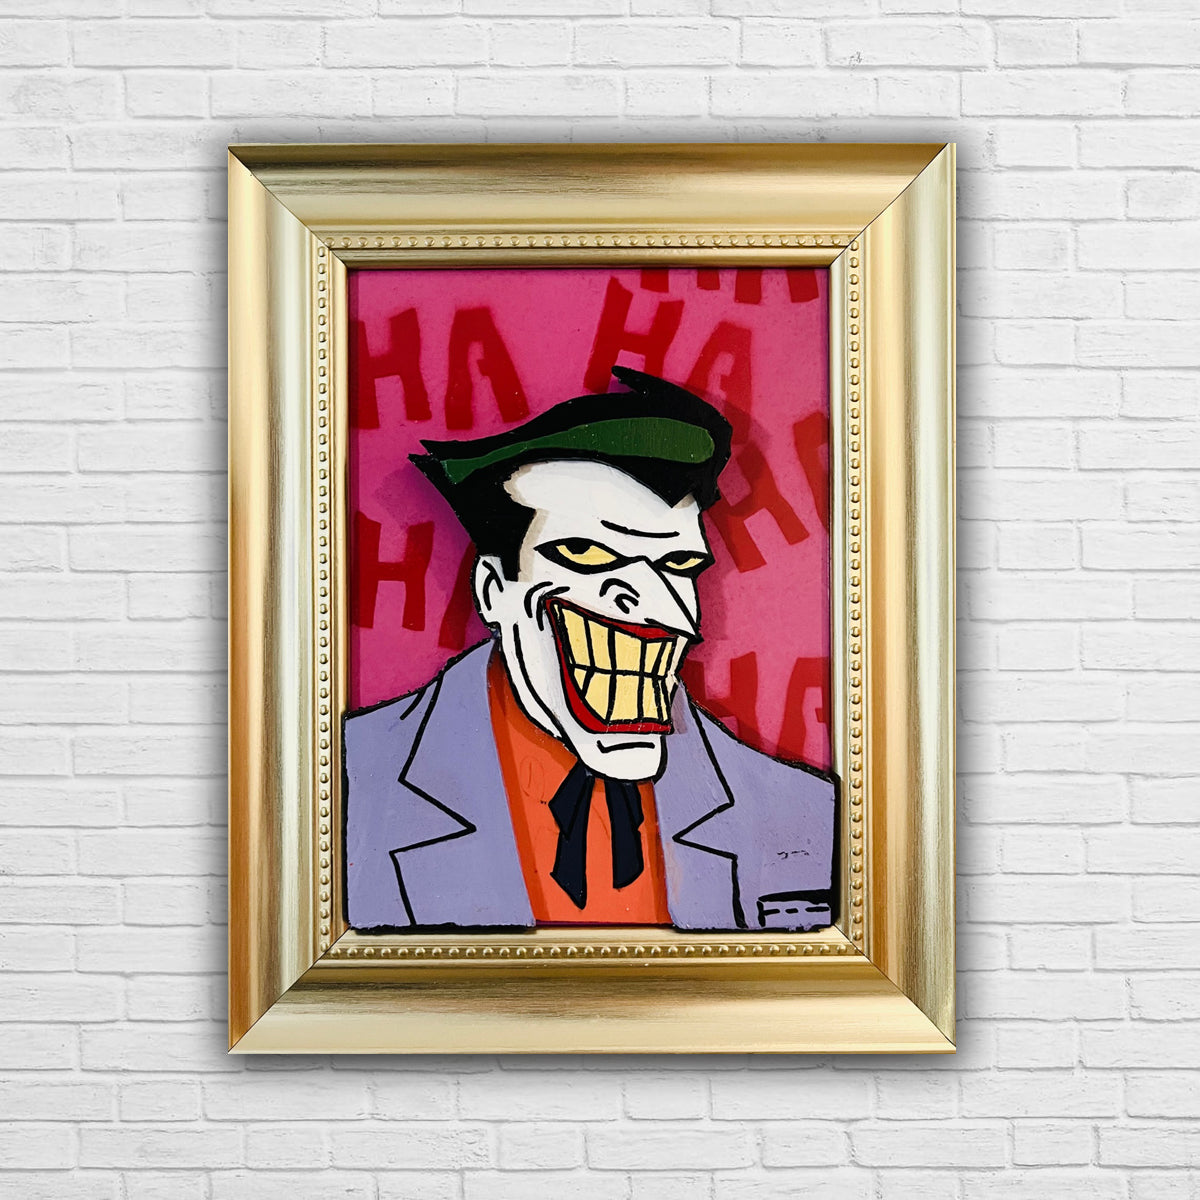 My Joker 3D